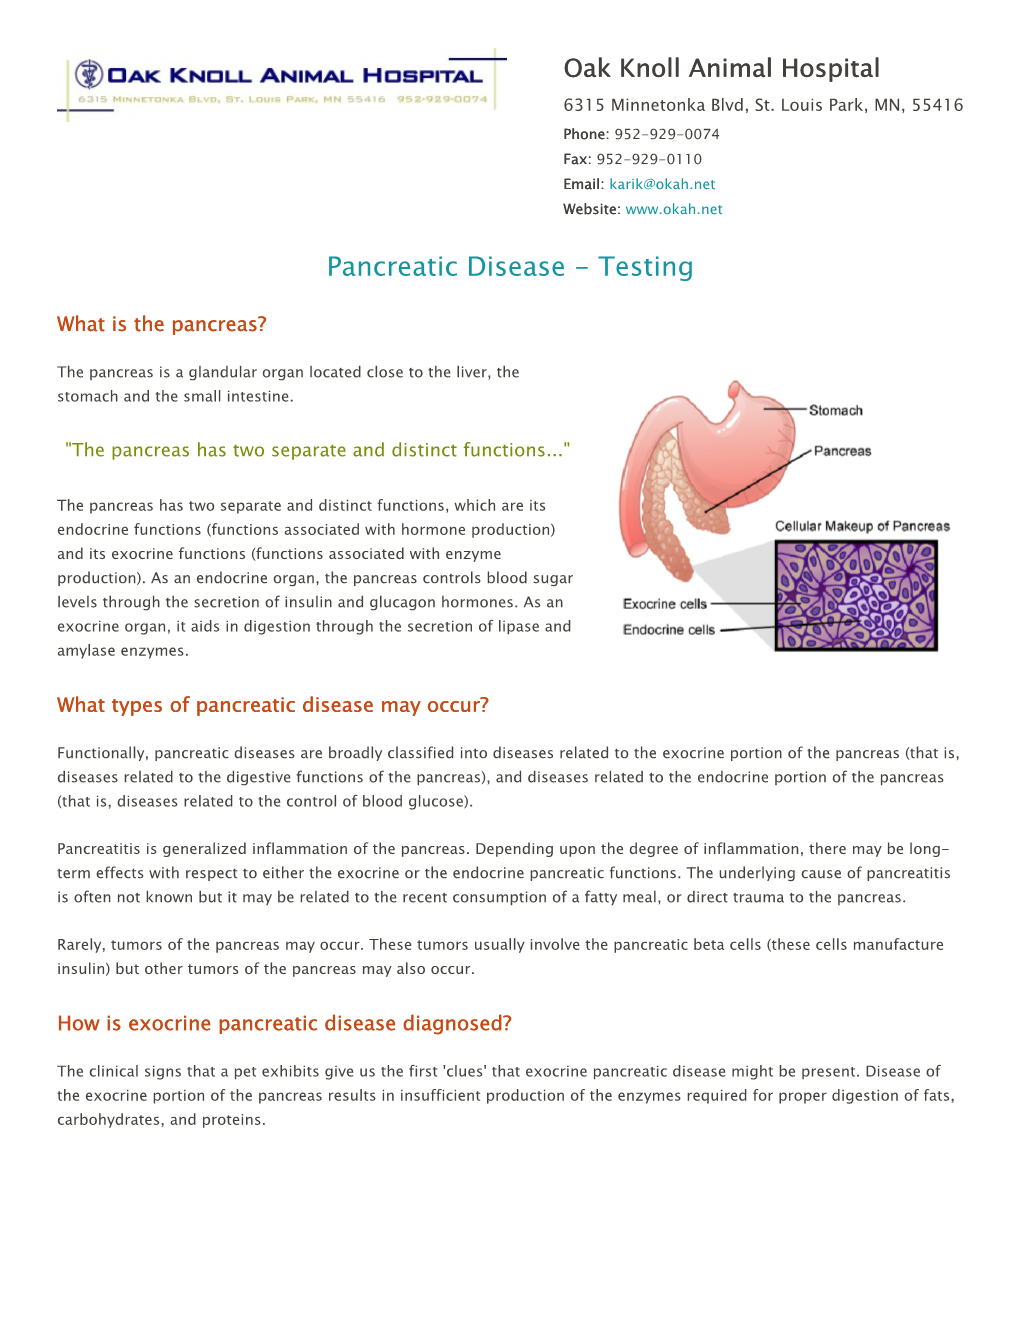 Pancreatic Disease - Testing